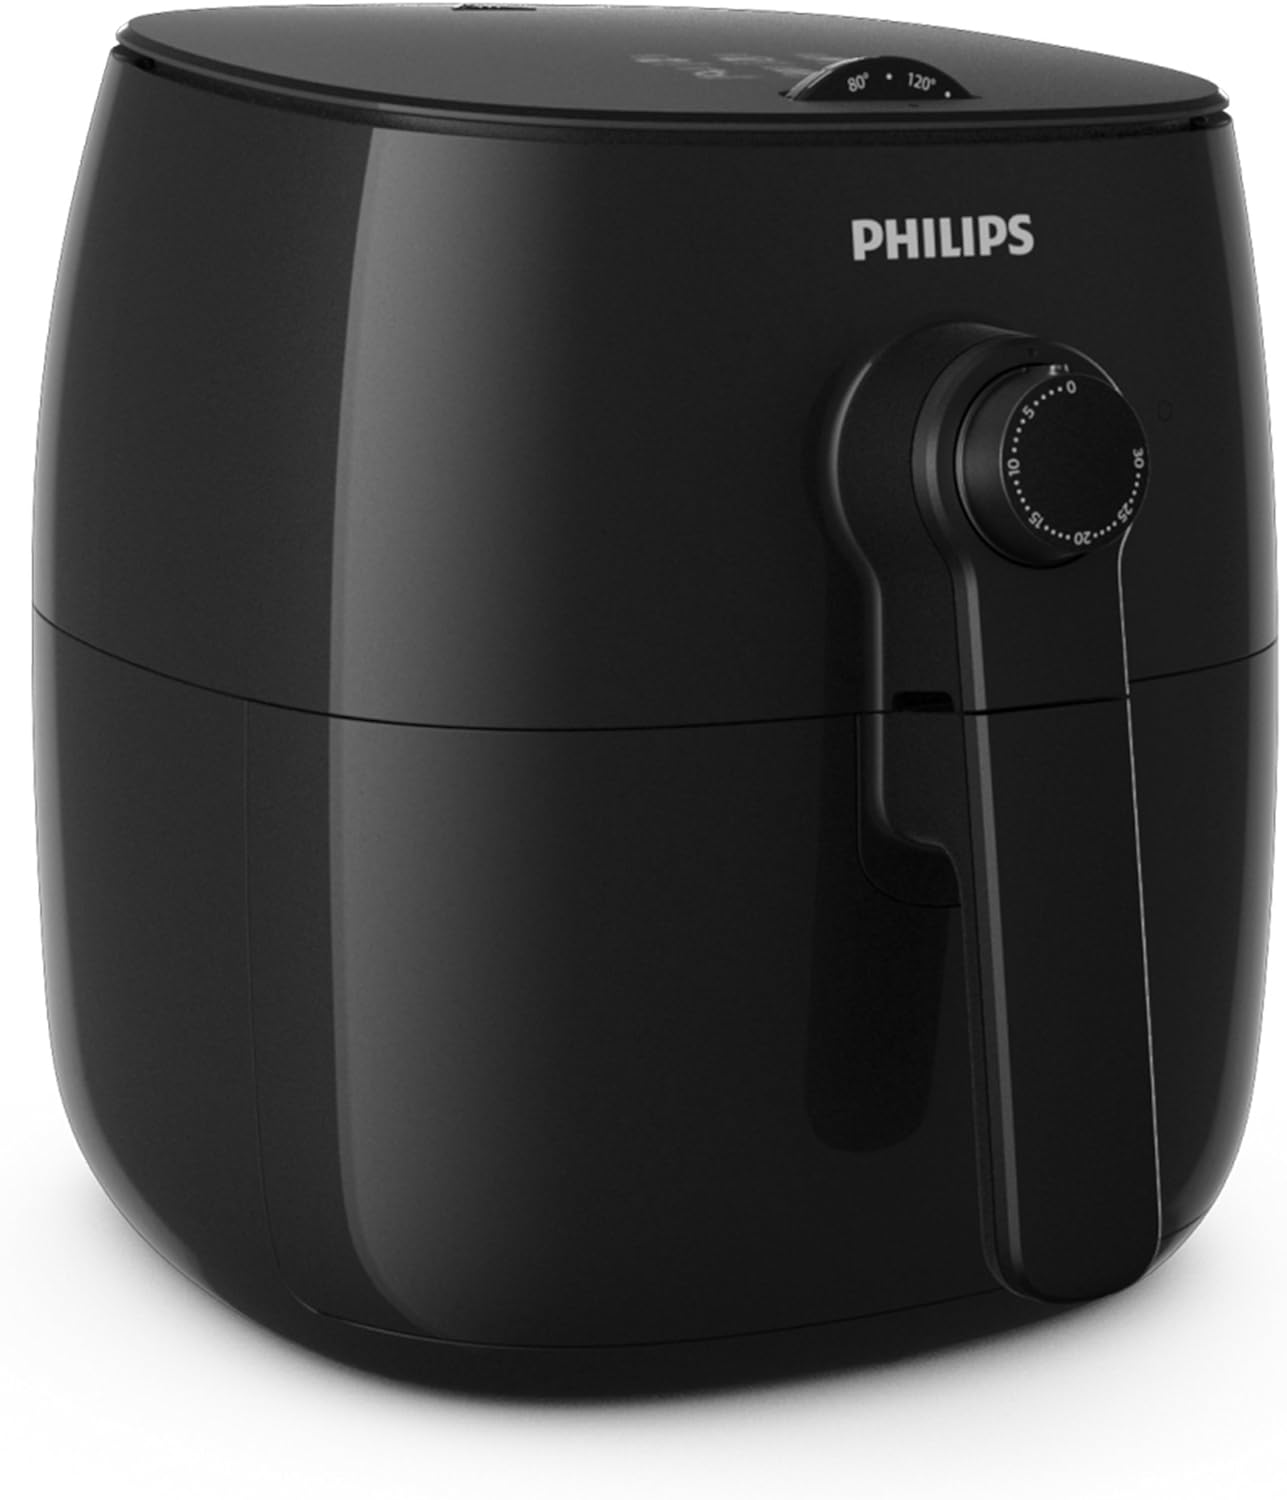 Philips Kitchen Appliances Philips TurboStar Technology Airfryer